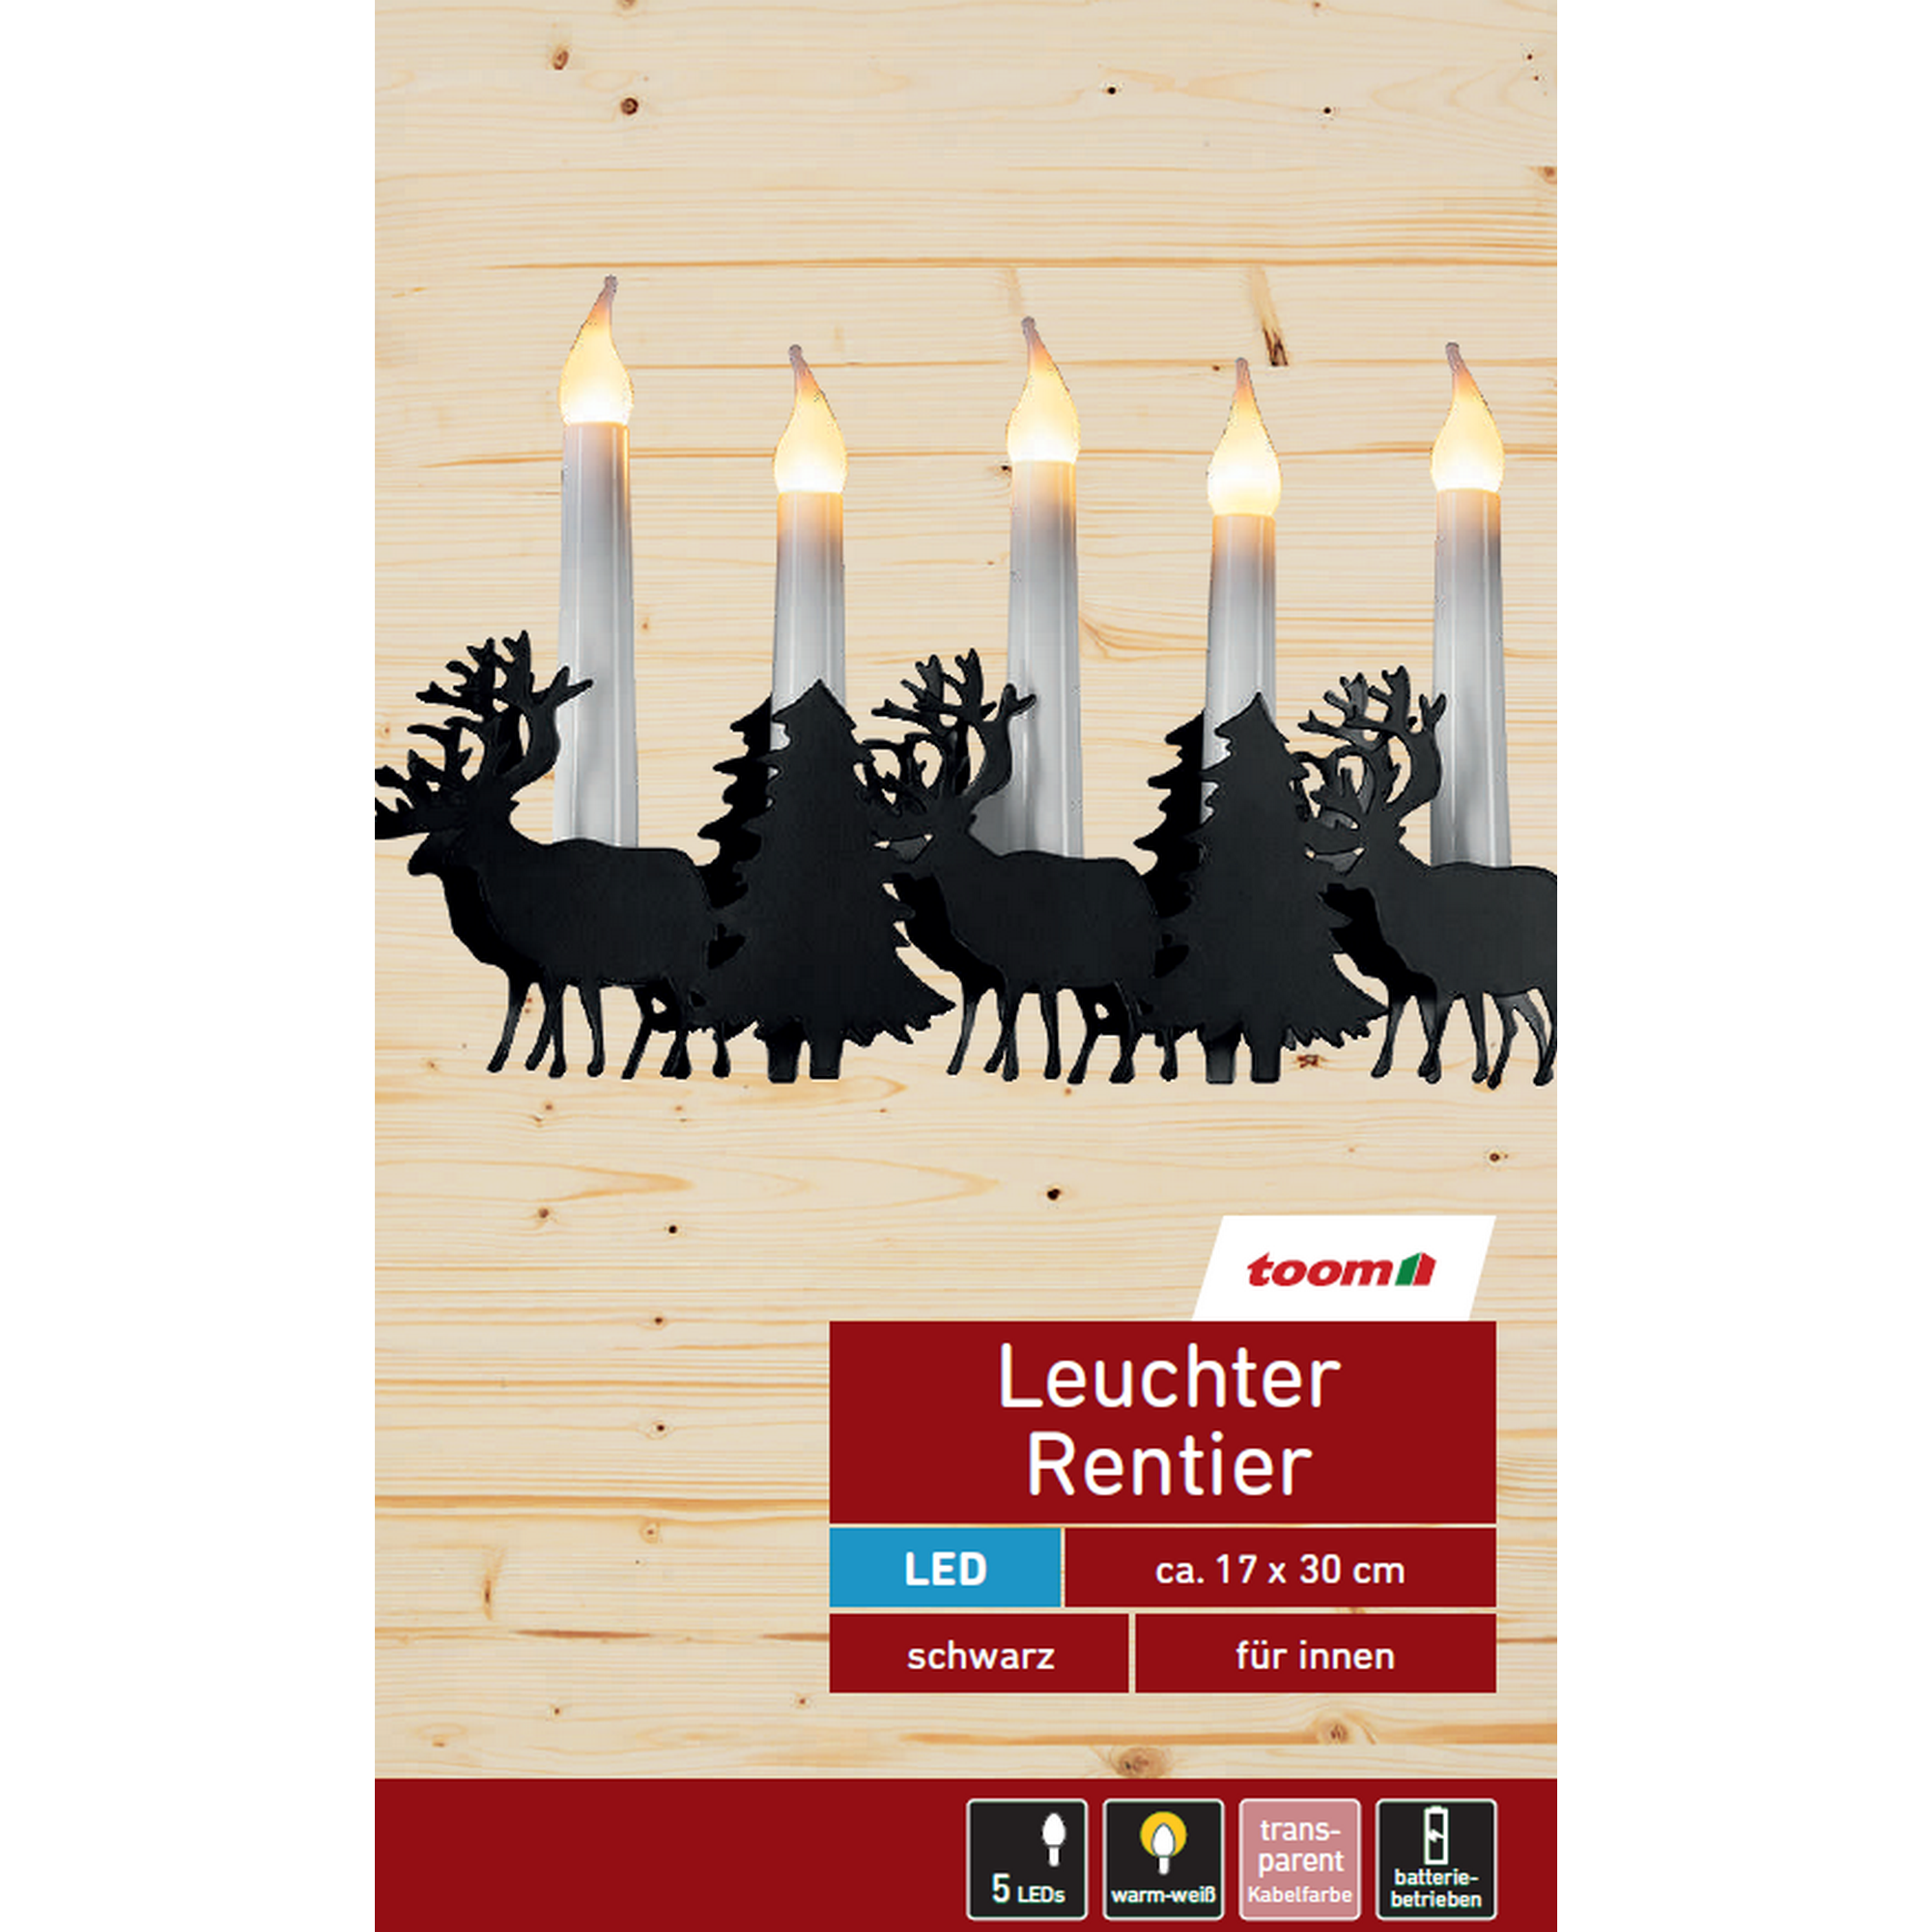 LED-Leuchter 'Rentier' schwarz 5 LEDs warmweiß 30 x 17 cm + product picture